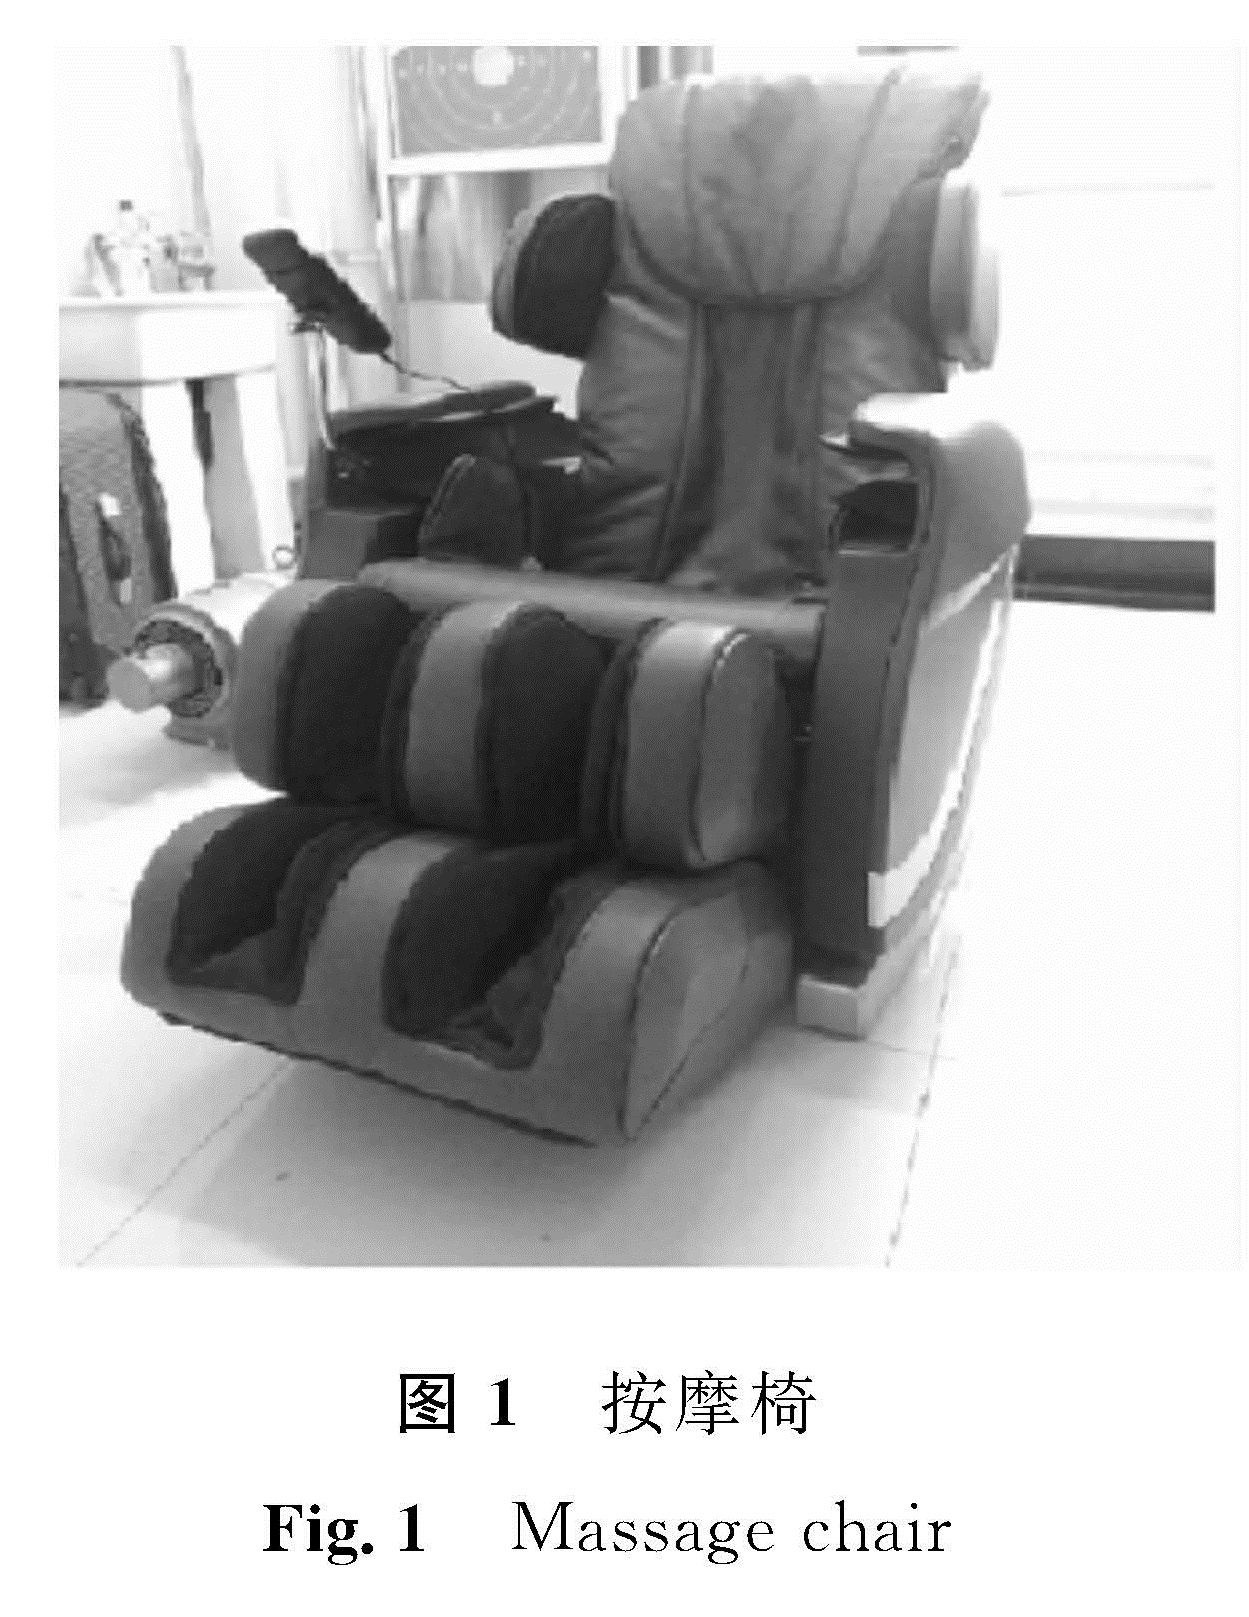 图1 按摩椅<br/>Fig.1 Massage chair